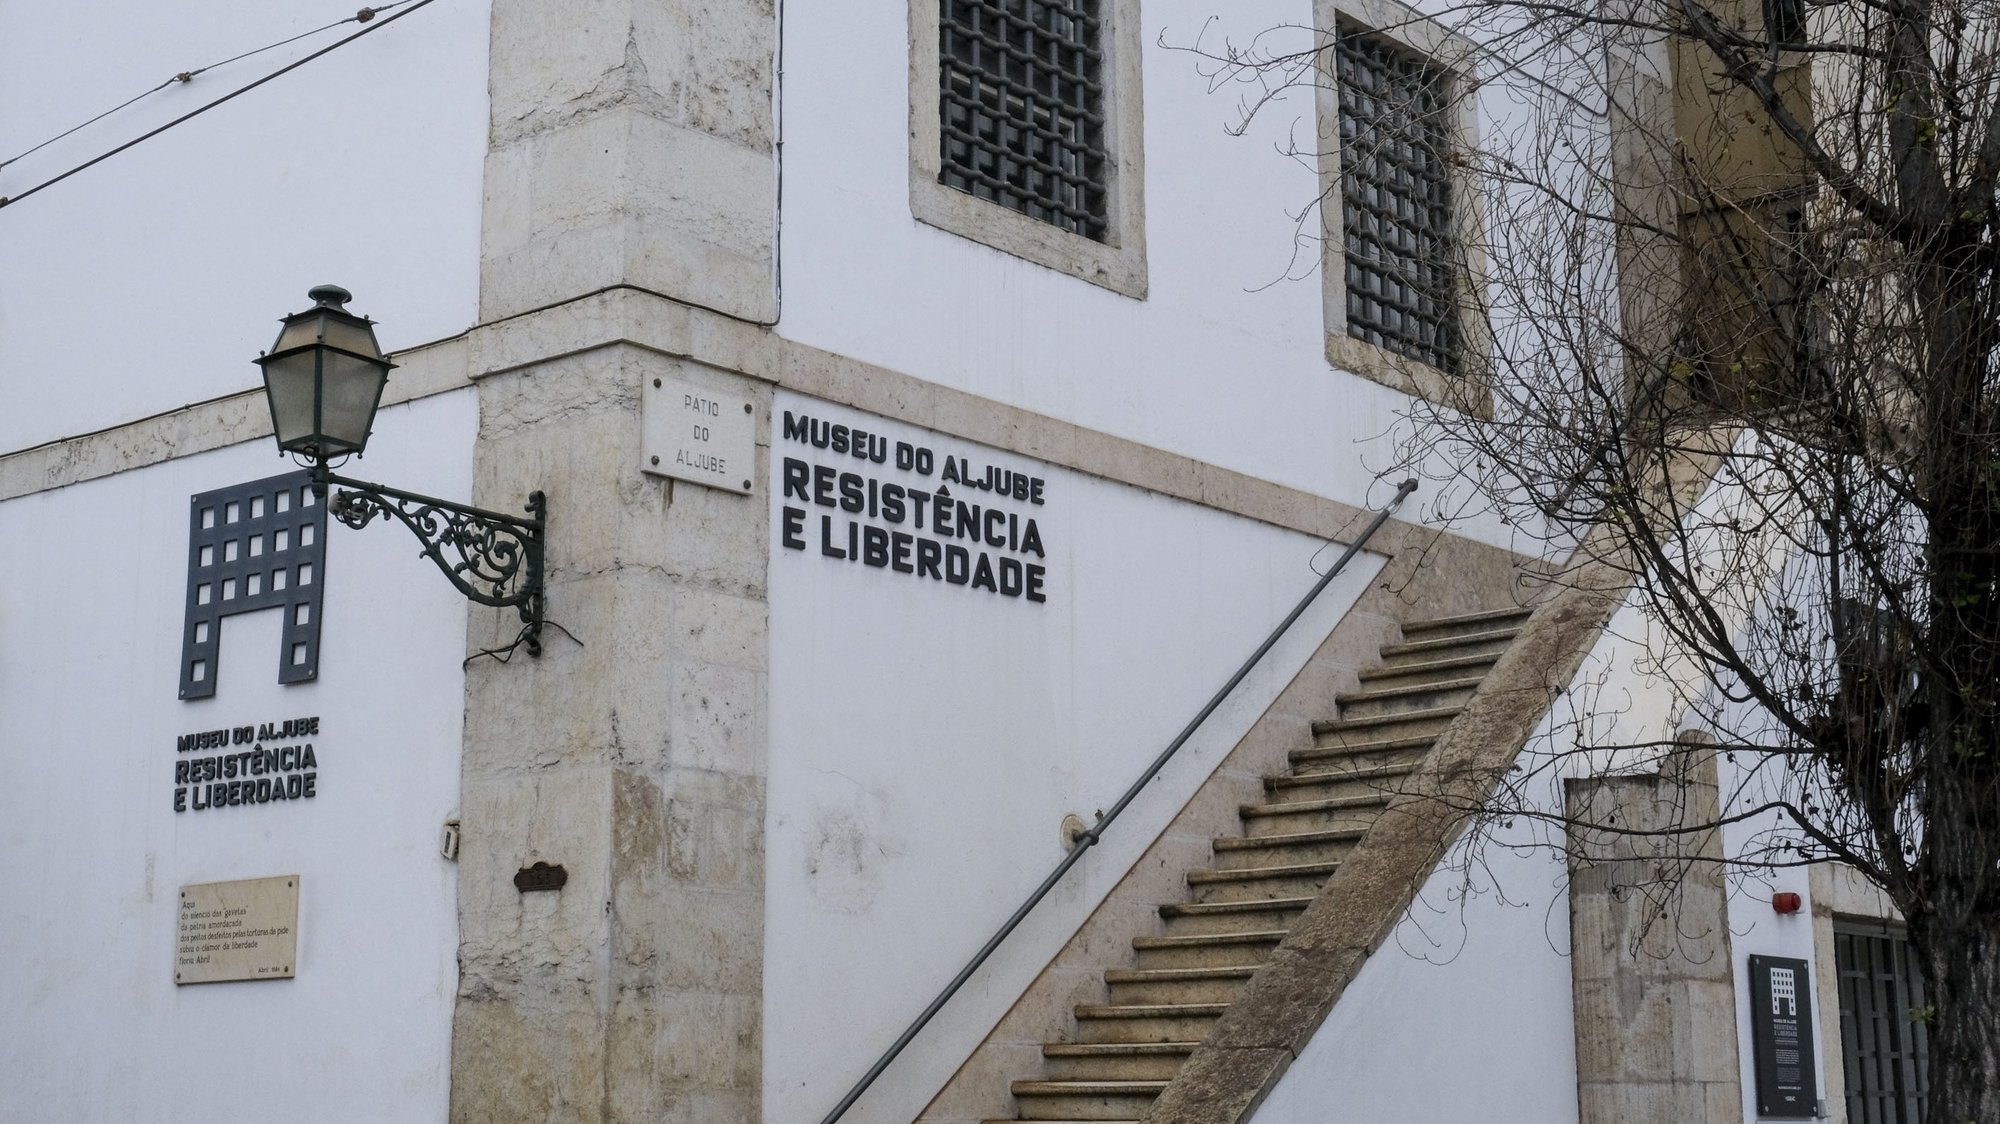 Museu do Aljube Resistência e Liberdade, em Lisboa, 9 de abril de 2020. JANTÓNIO COTRIM/LUSA